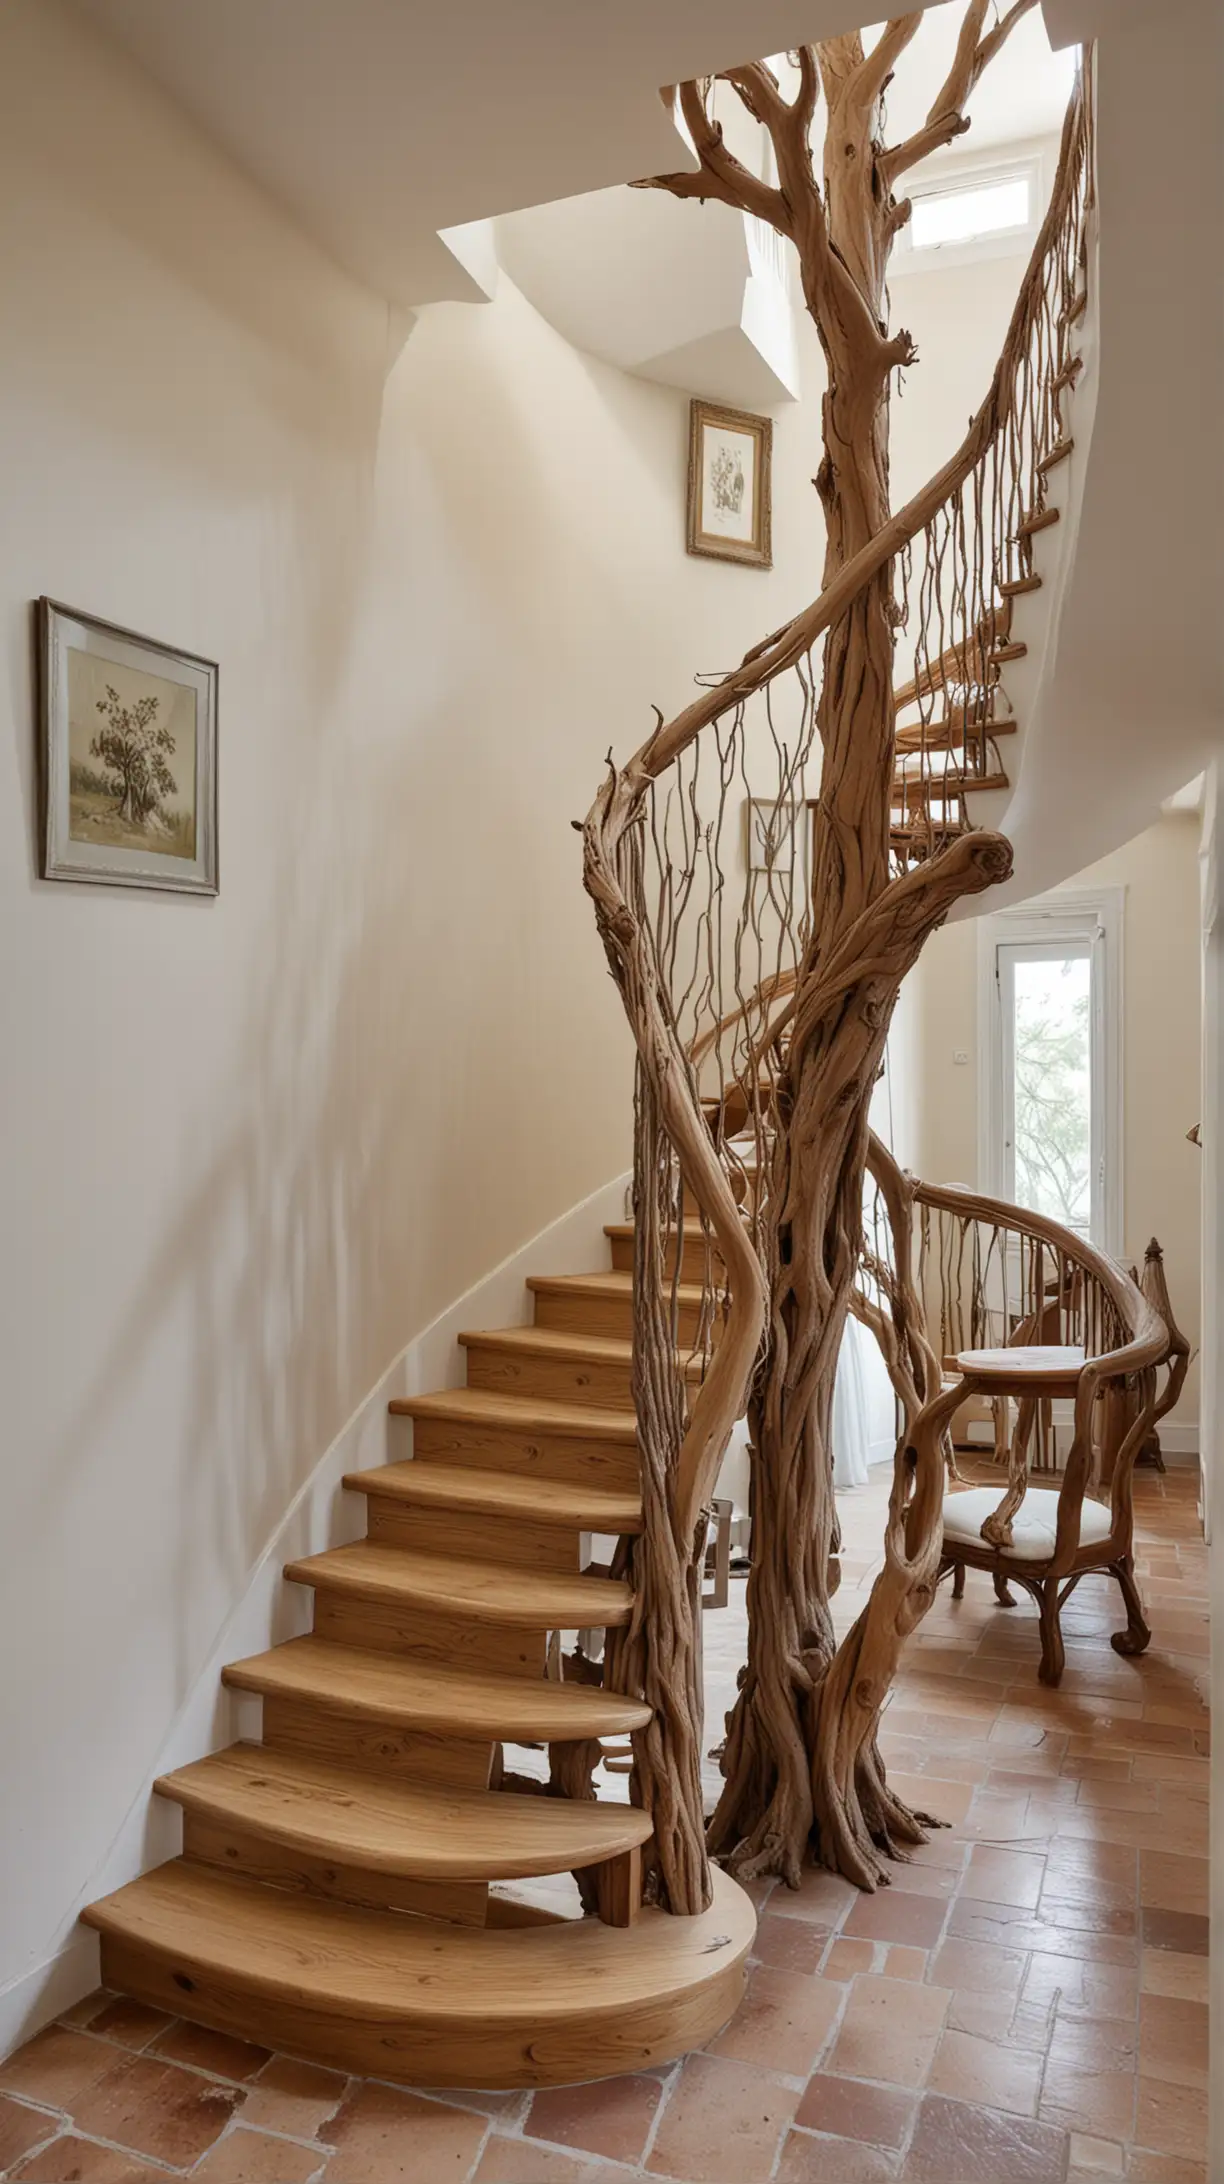 Escalier fait en arbre tortueux dans une charmante maison